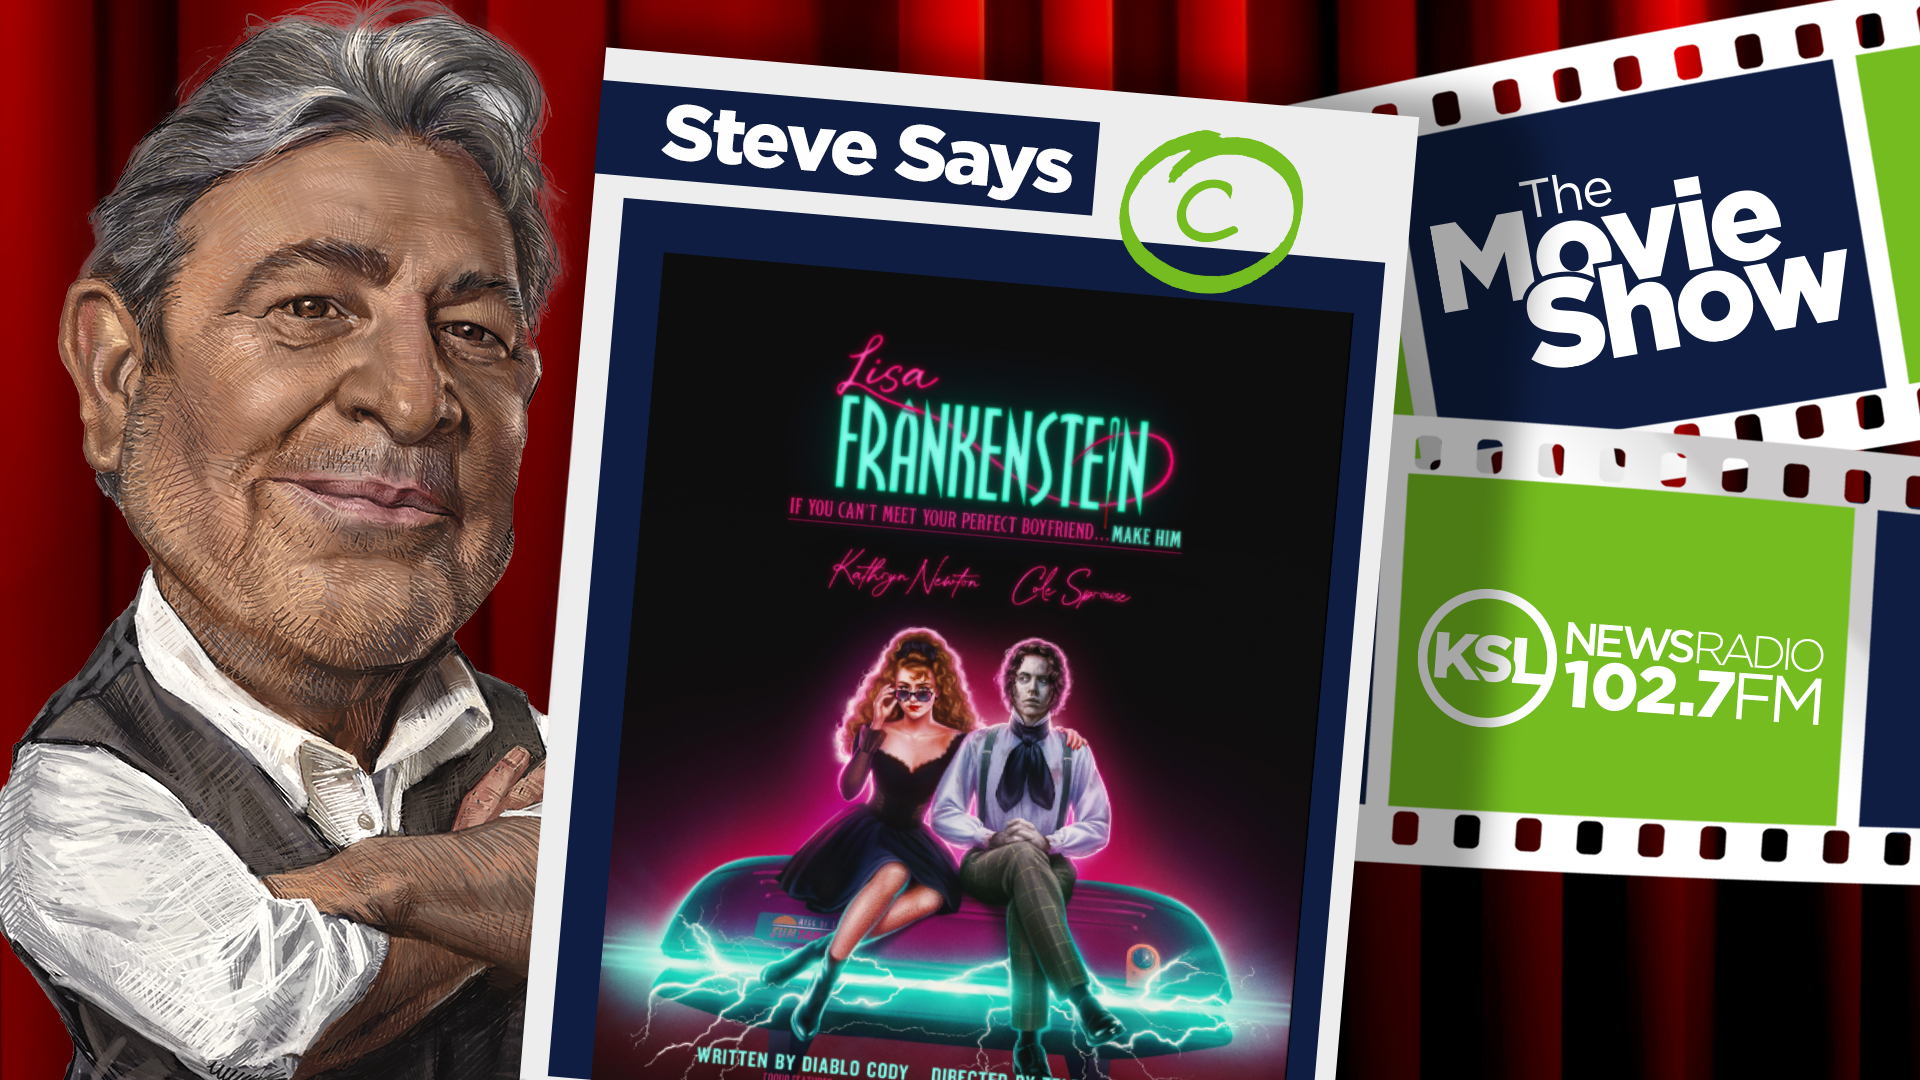 steve salles lisa Frankenstein review...